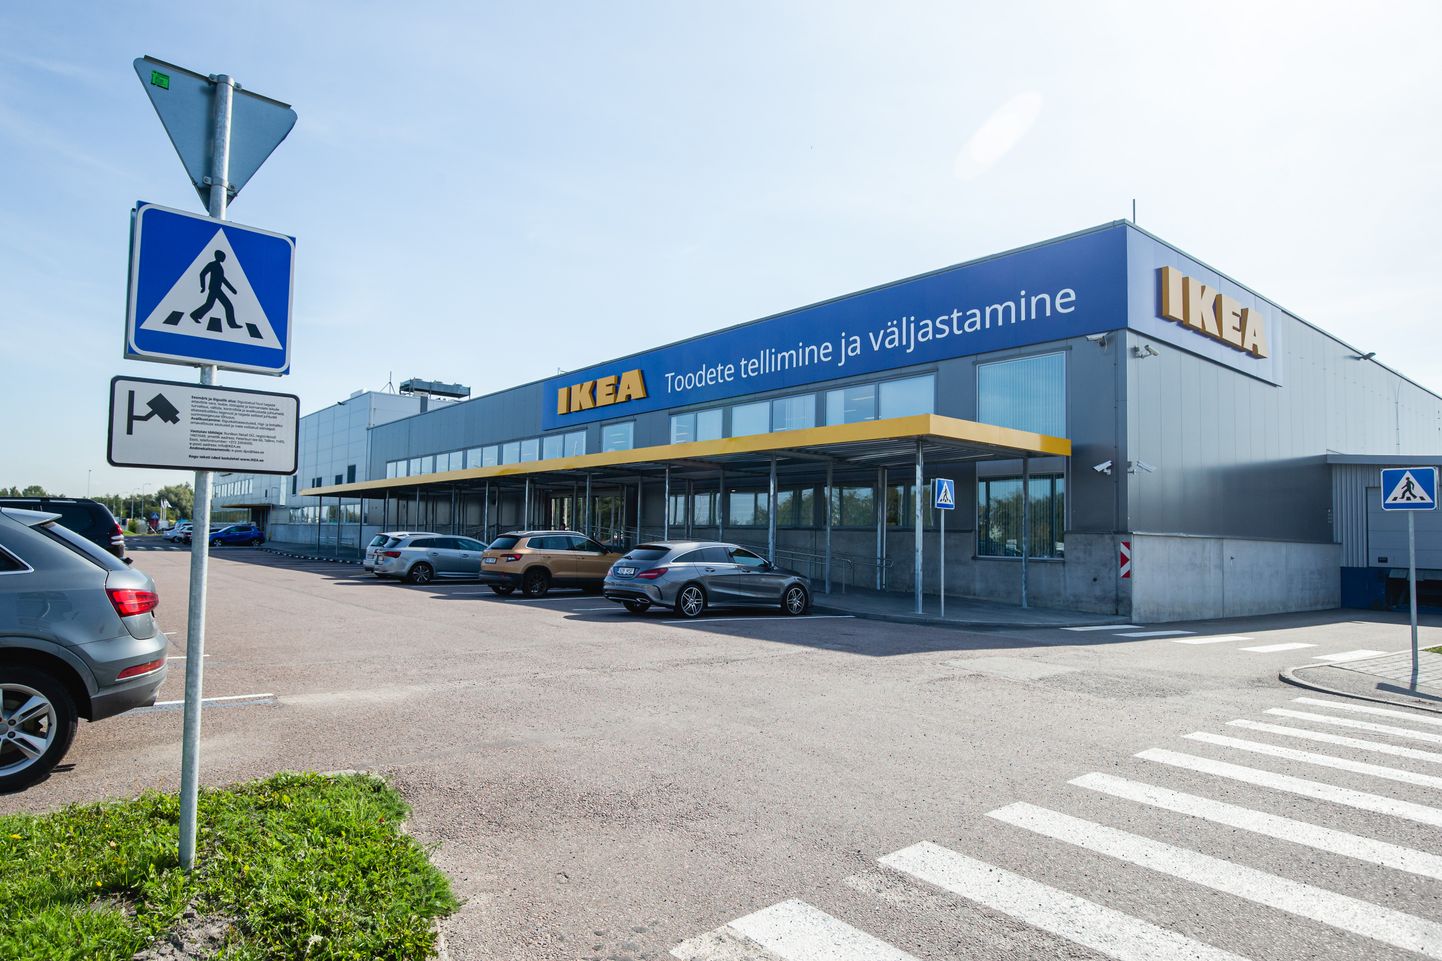 Шведская мебельная компания IKEA открыла в Эстонии э-магазин и пункт выдачи товара вместе с выставочным залом.